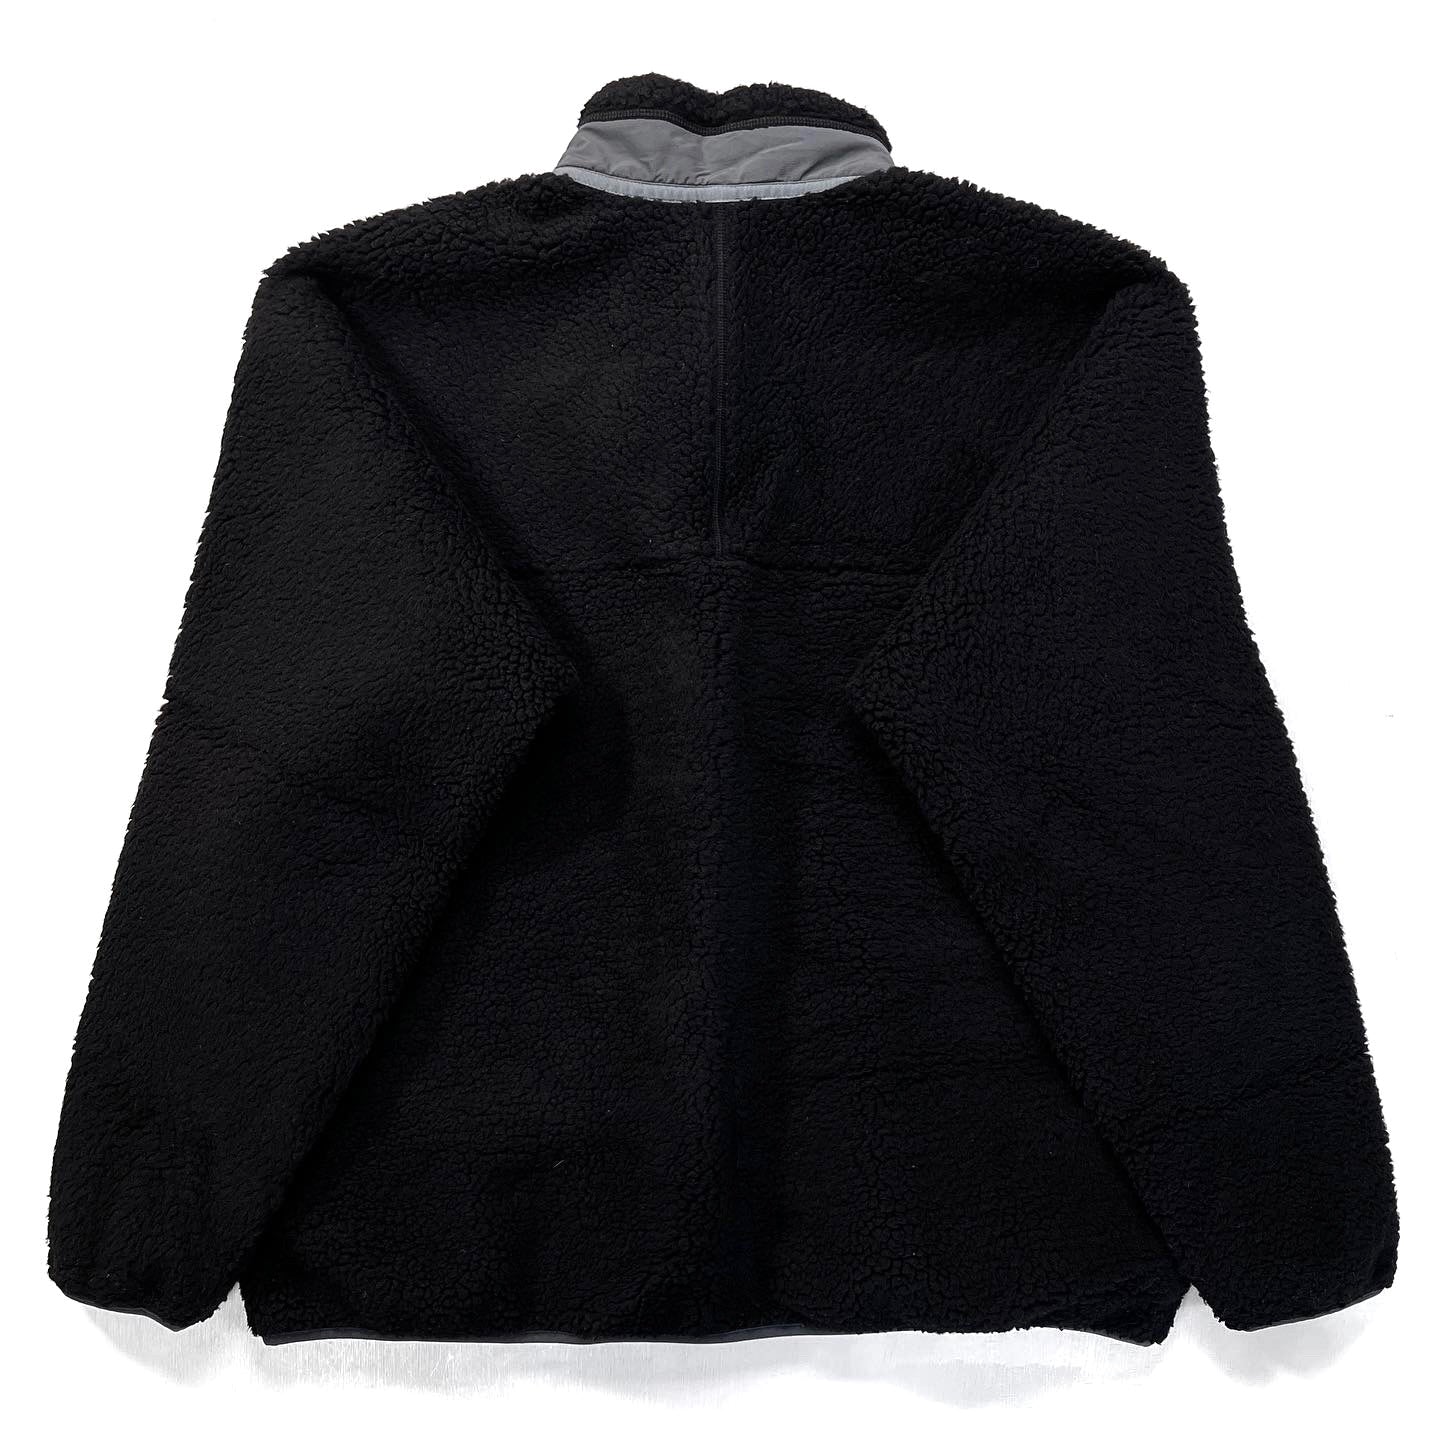 2015 Patagonia Classic Retro-X Fleece Jacket, Black & Grey (XXL)